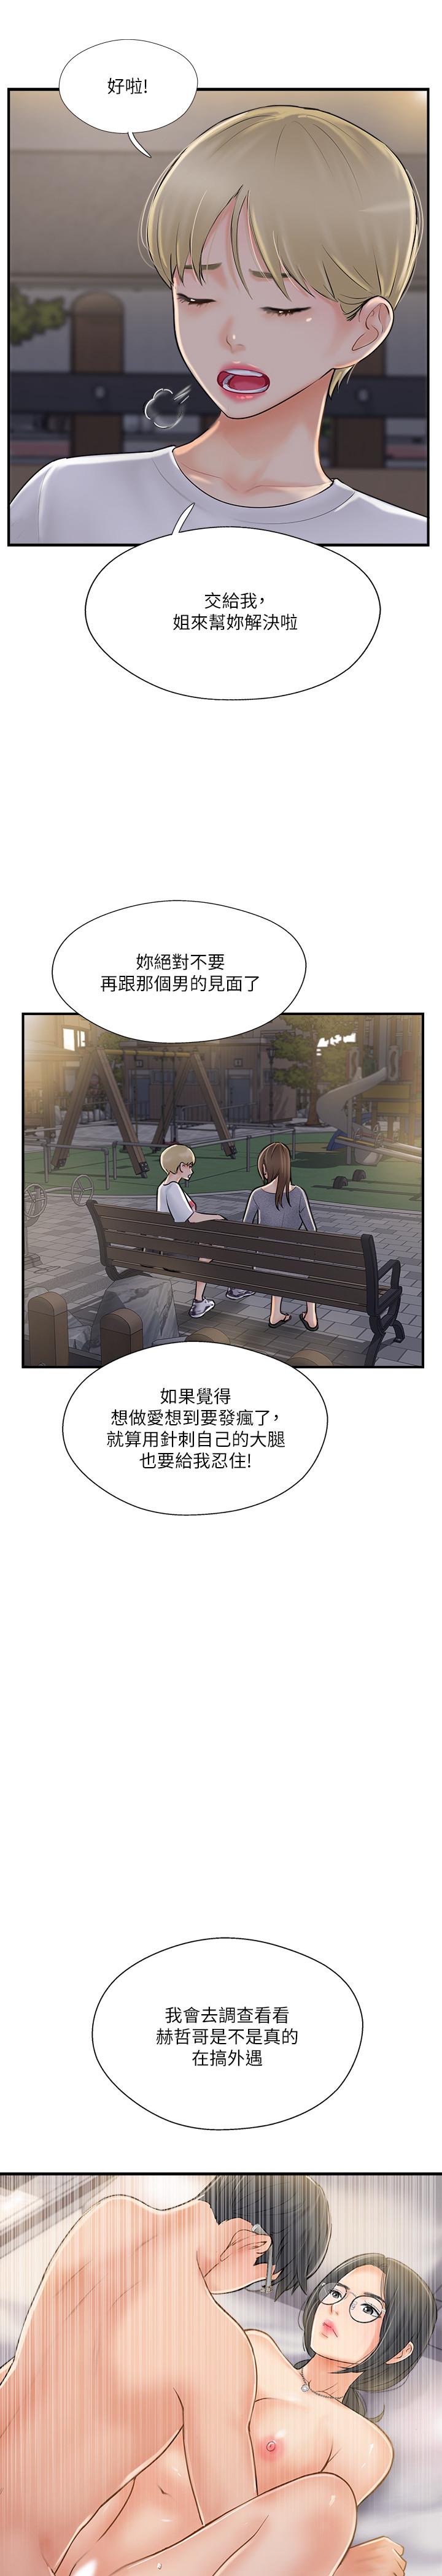 韩国污漫画 完美新伴侶 第20话-通往刺激新世界的测验 34